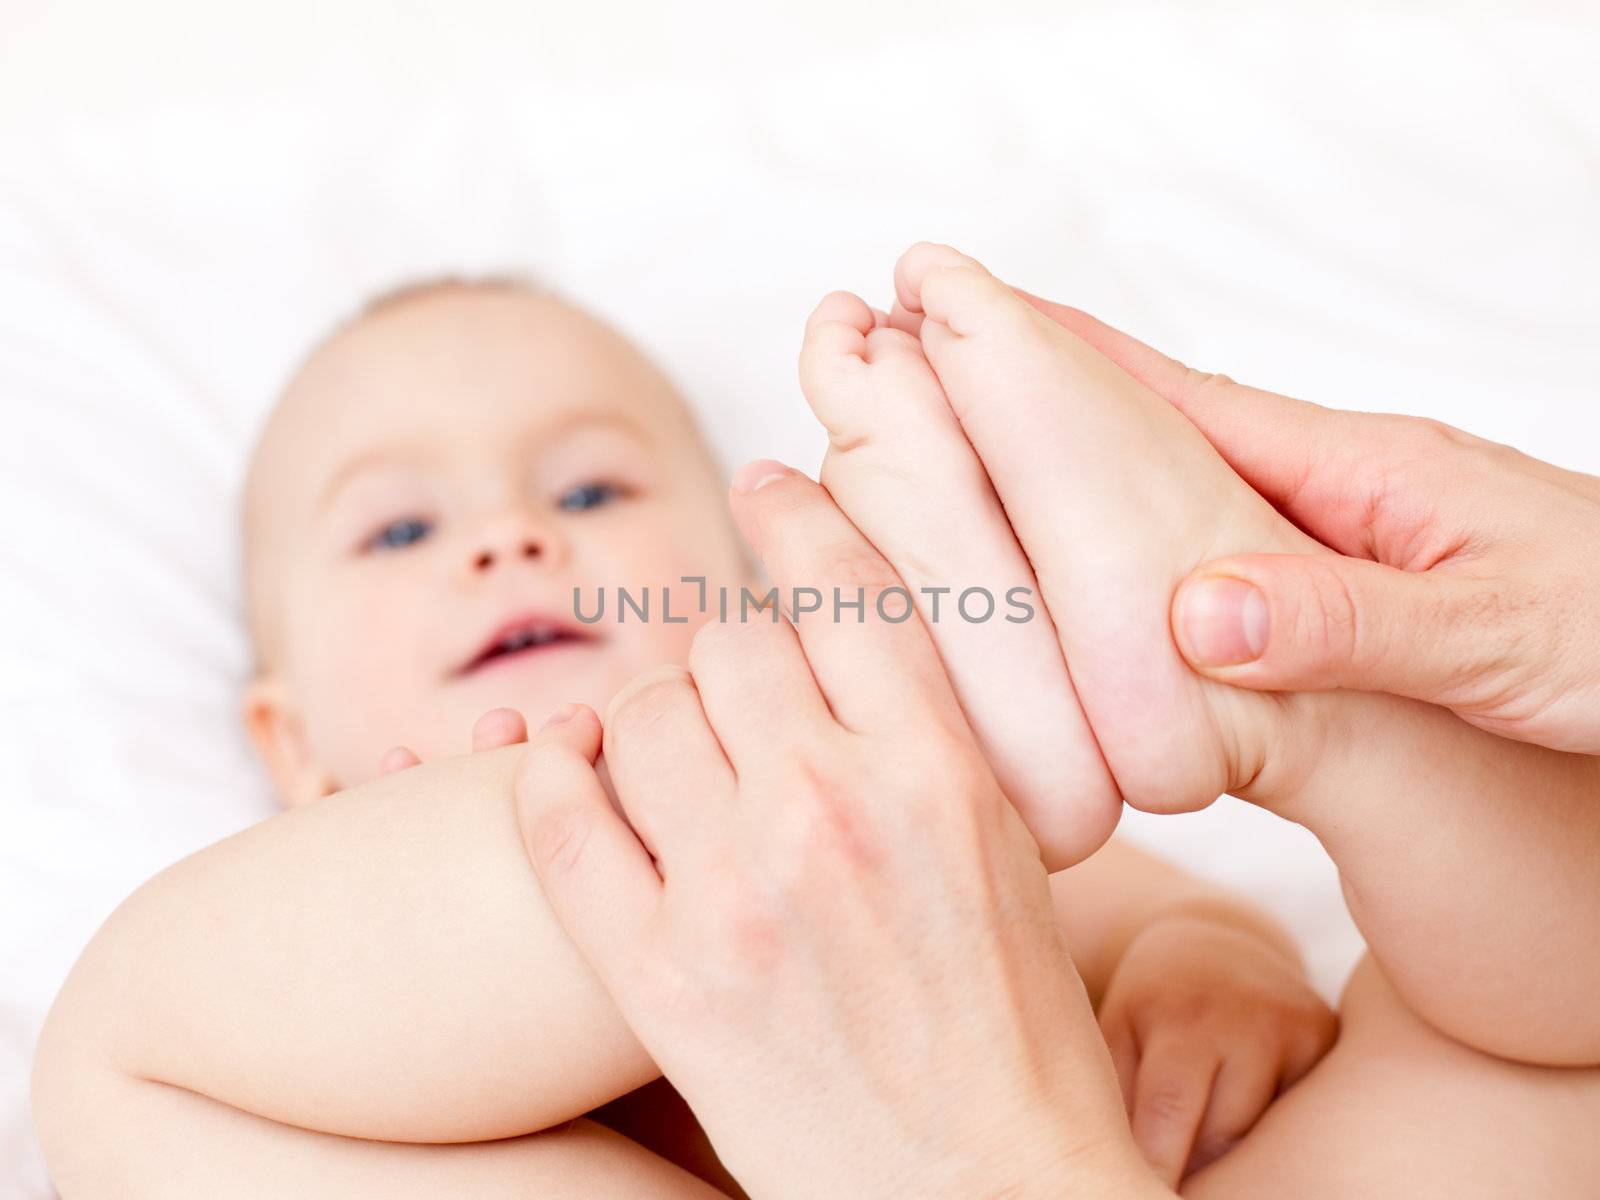 Masseur massaging little baby's feet, shallow focus